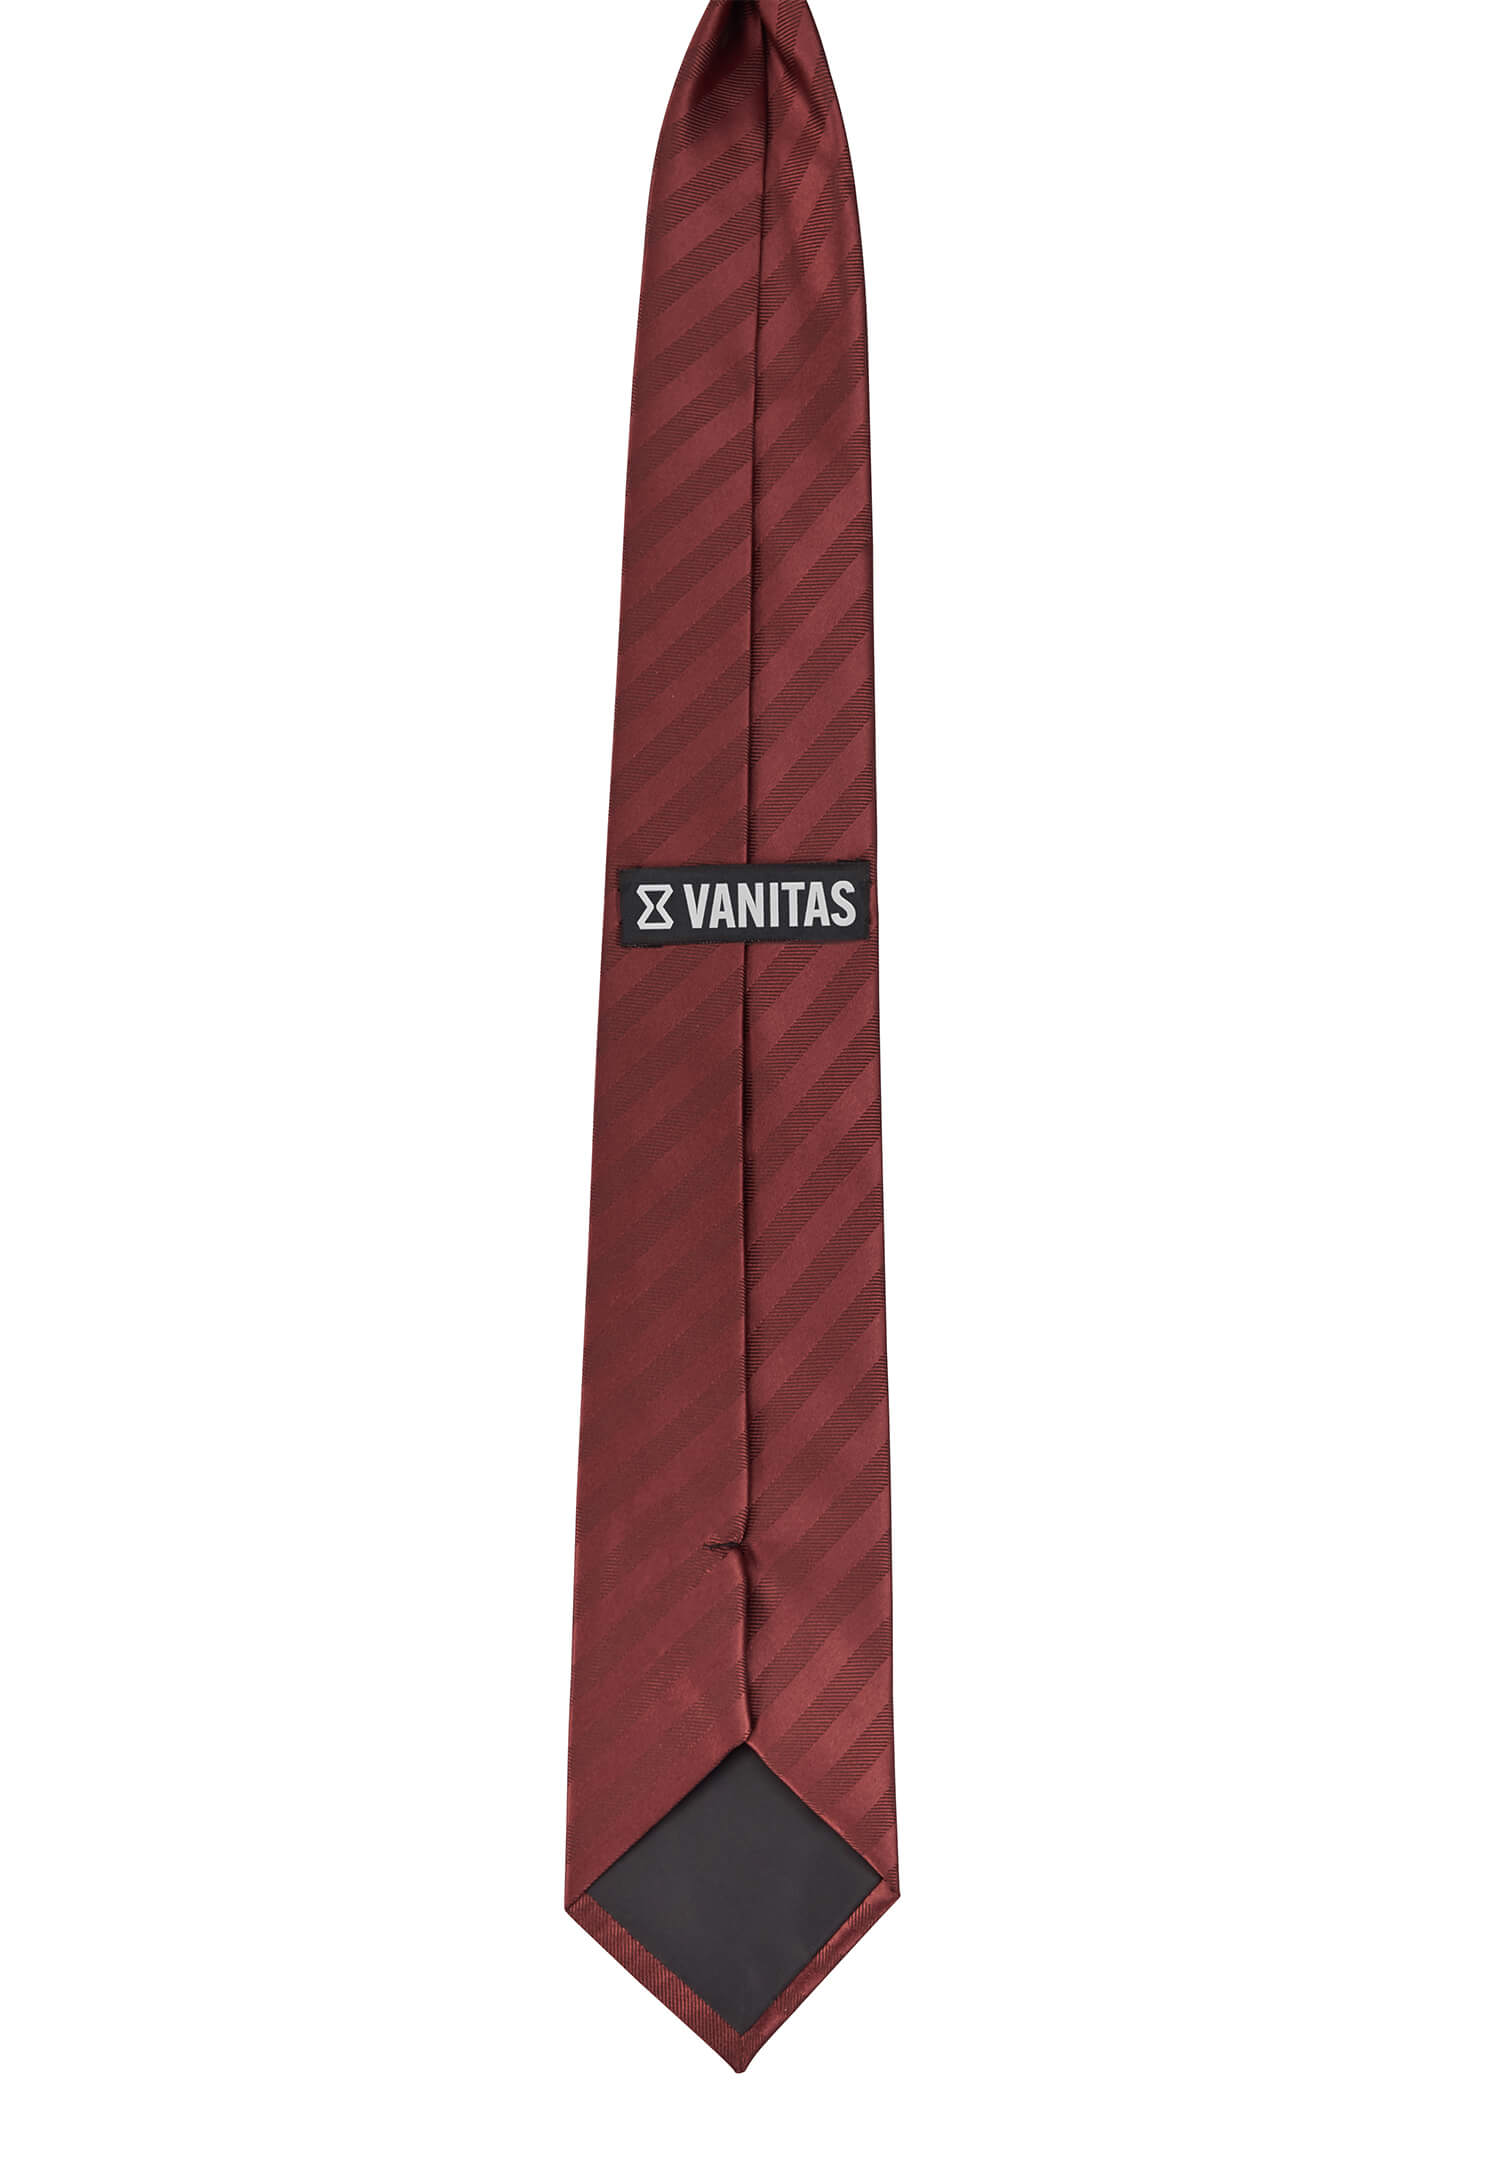 Krawatte vorgebunden mit Gummizug - rot/bordeaux gestreift